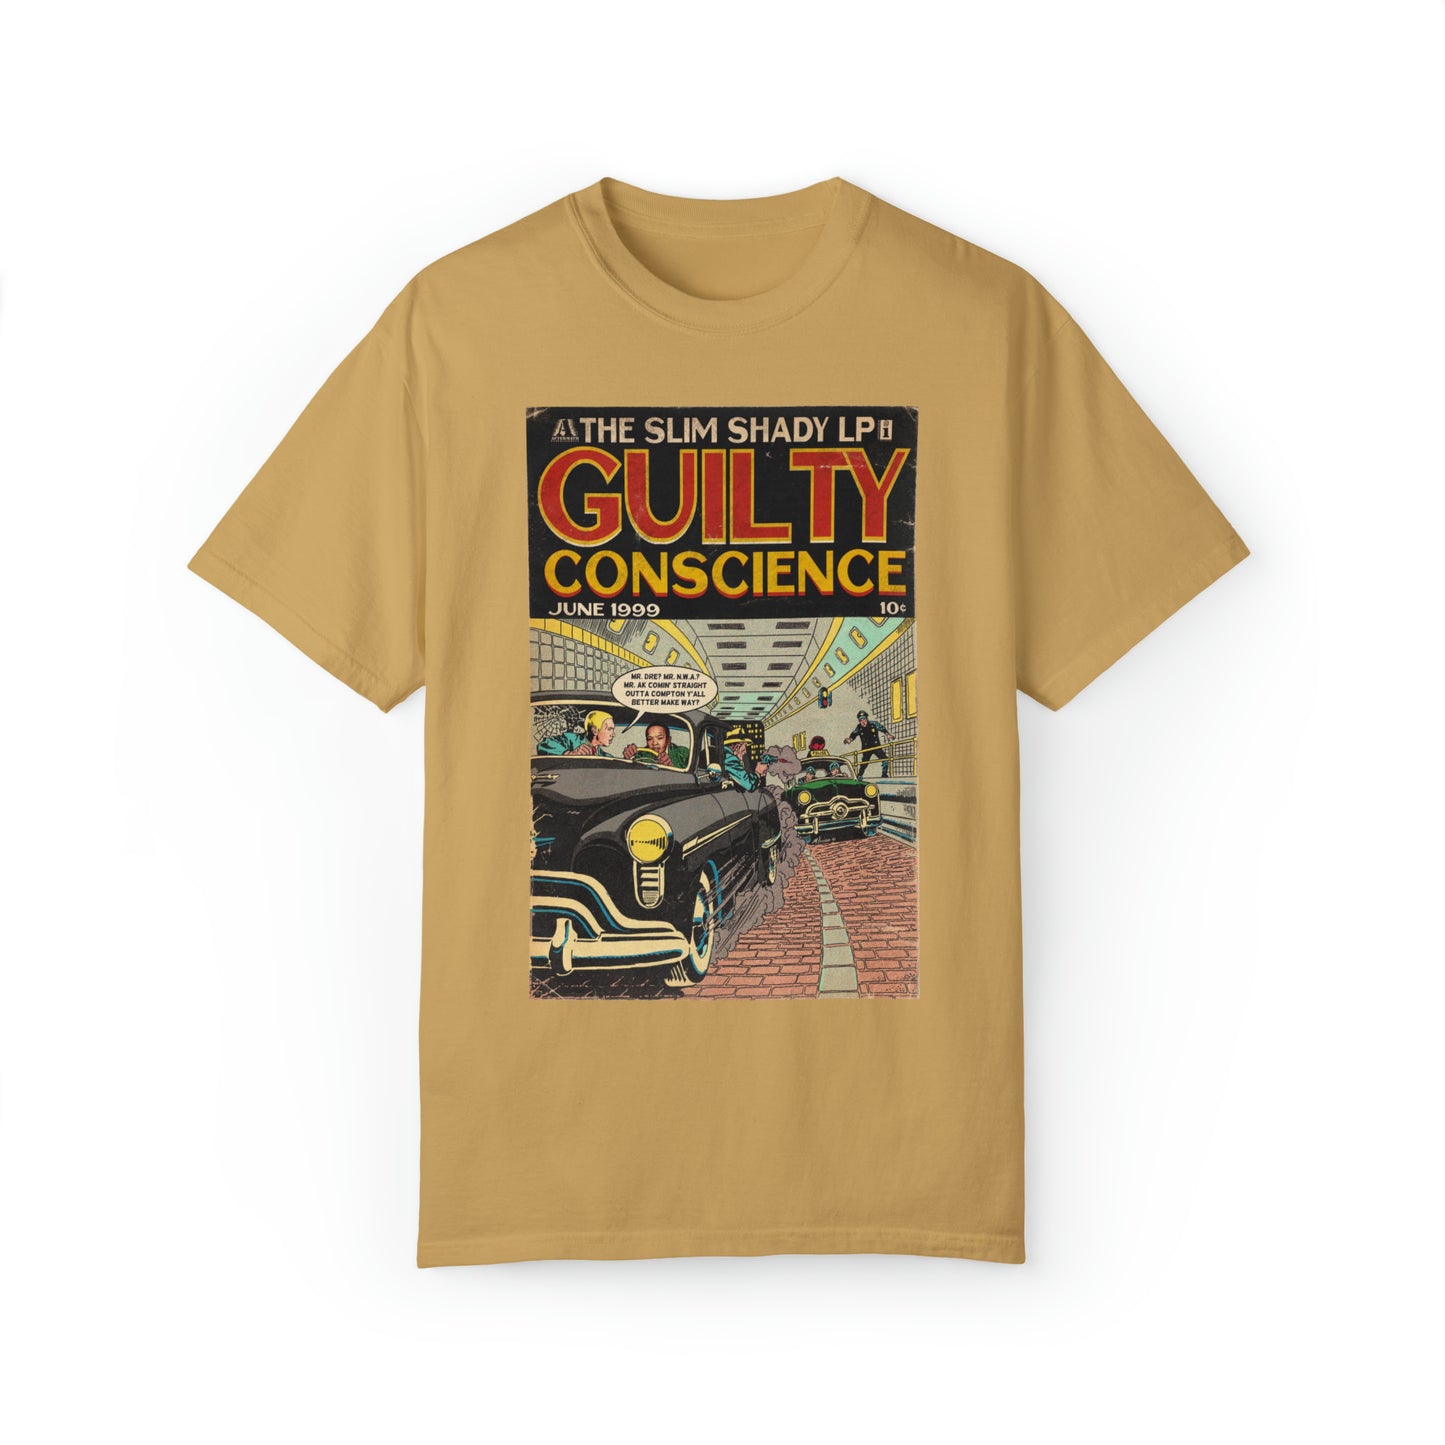 Eminem & Dr. Dre - Guilty Conscience - Unisex Comfort Colors T-shirt